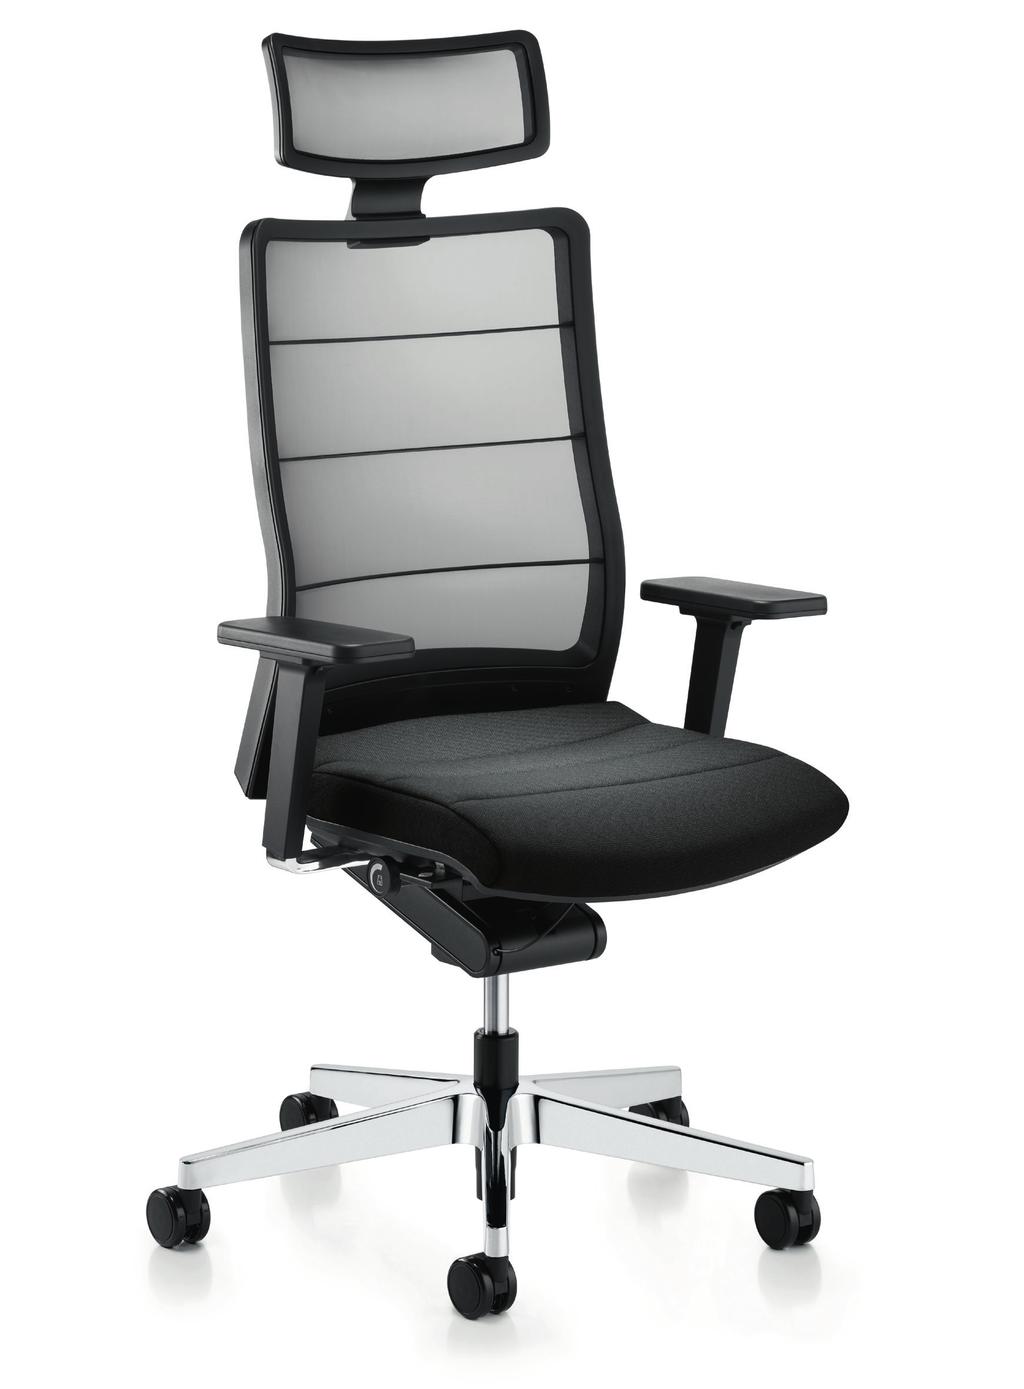 A cadeira apresenta também o mecanismo sincronizado Body-Float, exclusivo da Interstuhl, que